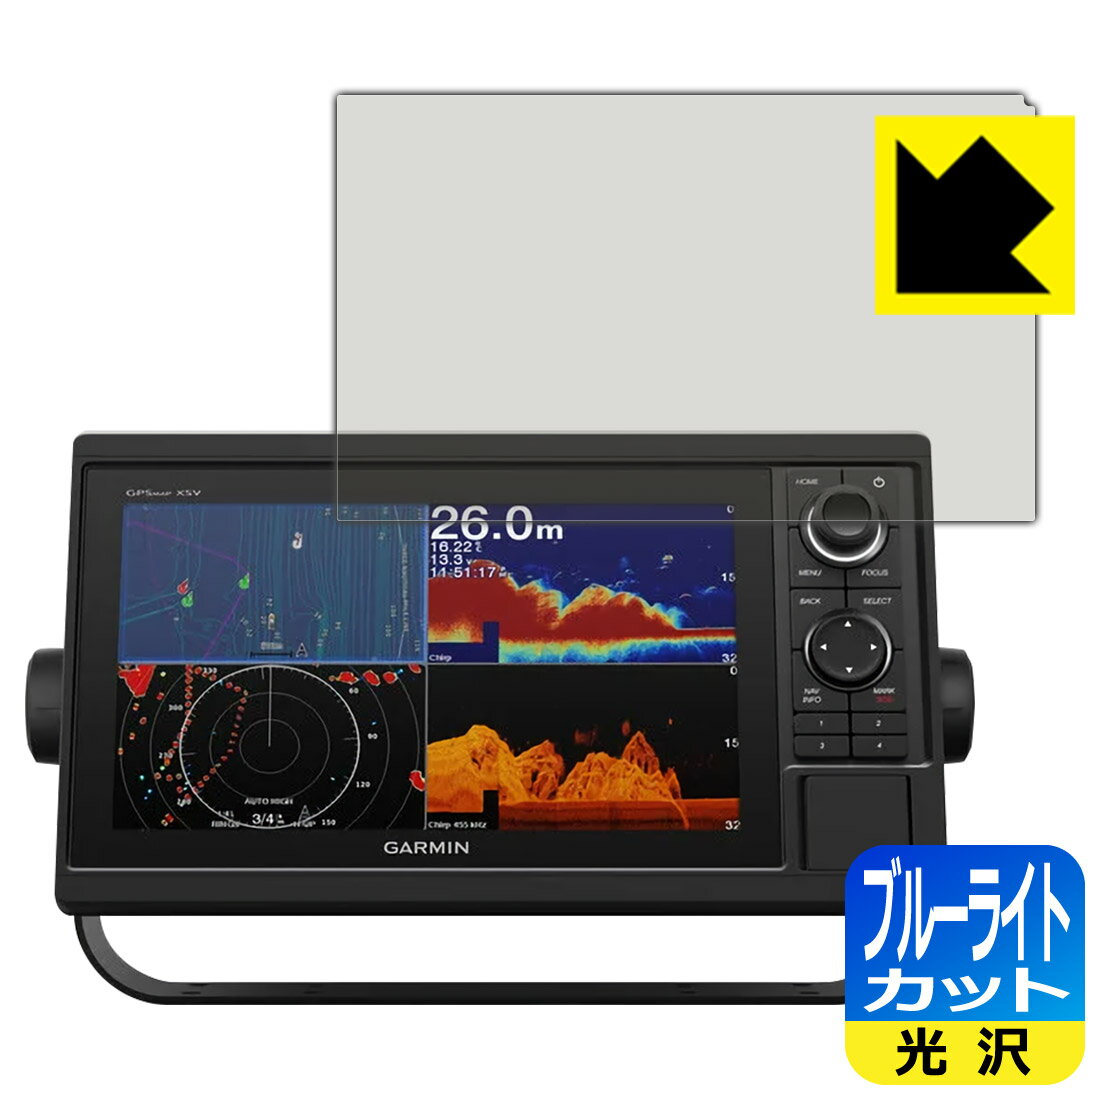 ブルーライトカット【光沢】保護フィルム GARMIN GPSMAP 1022xsv / 1022xs / 1022 日本製 自社製造直販